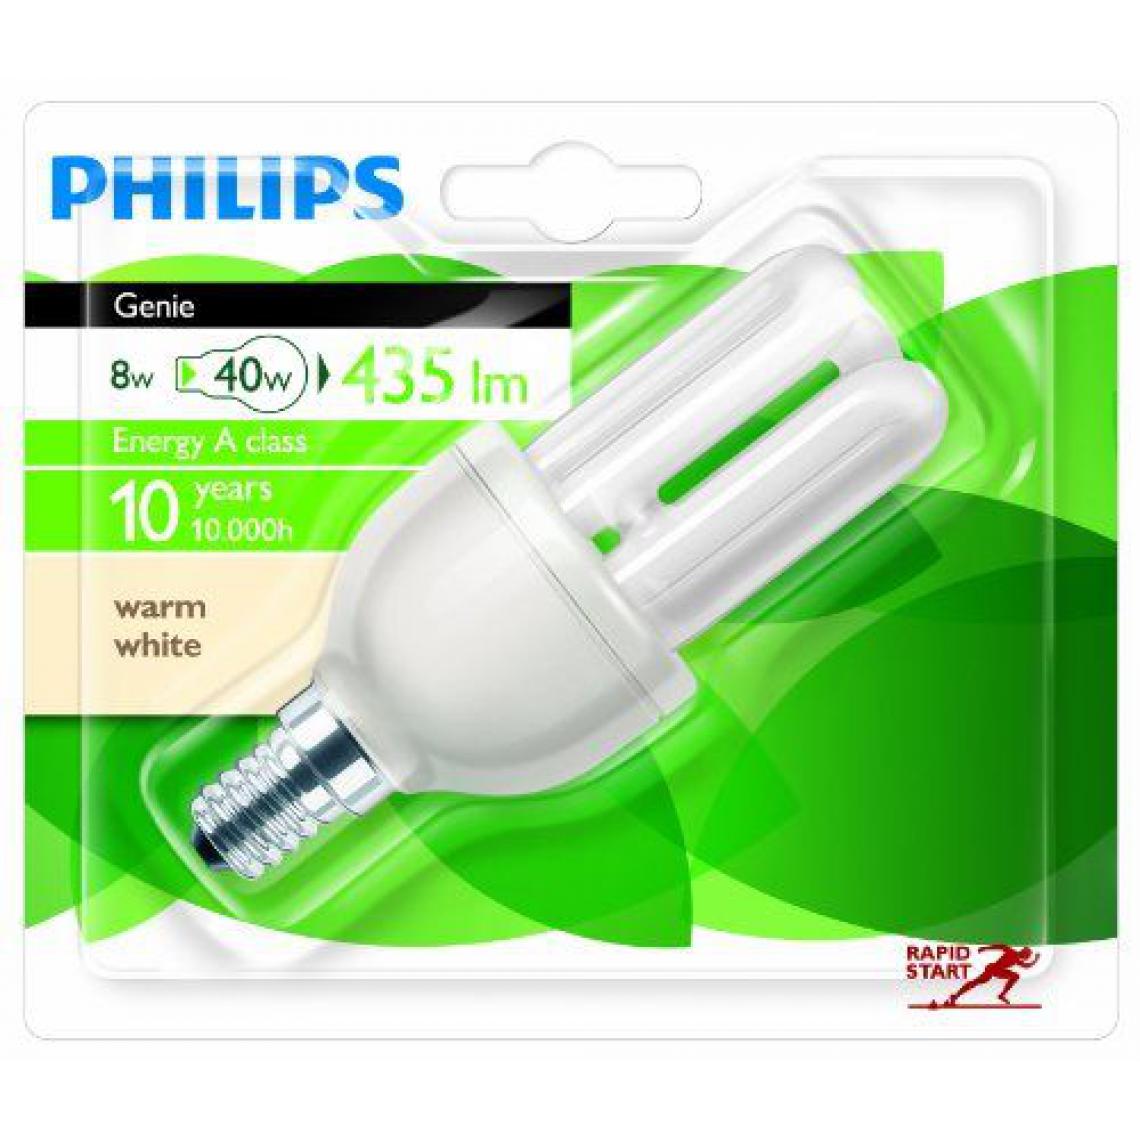 Philips - Philips 929689433338 Génie 8 W E14 WW 1BL ampoule à Economie d'énergie 230V - Ampoules LED